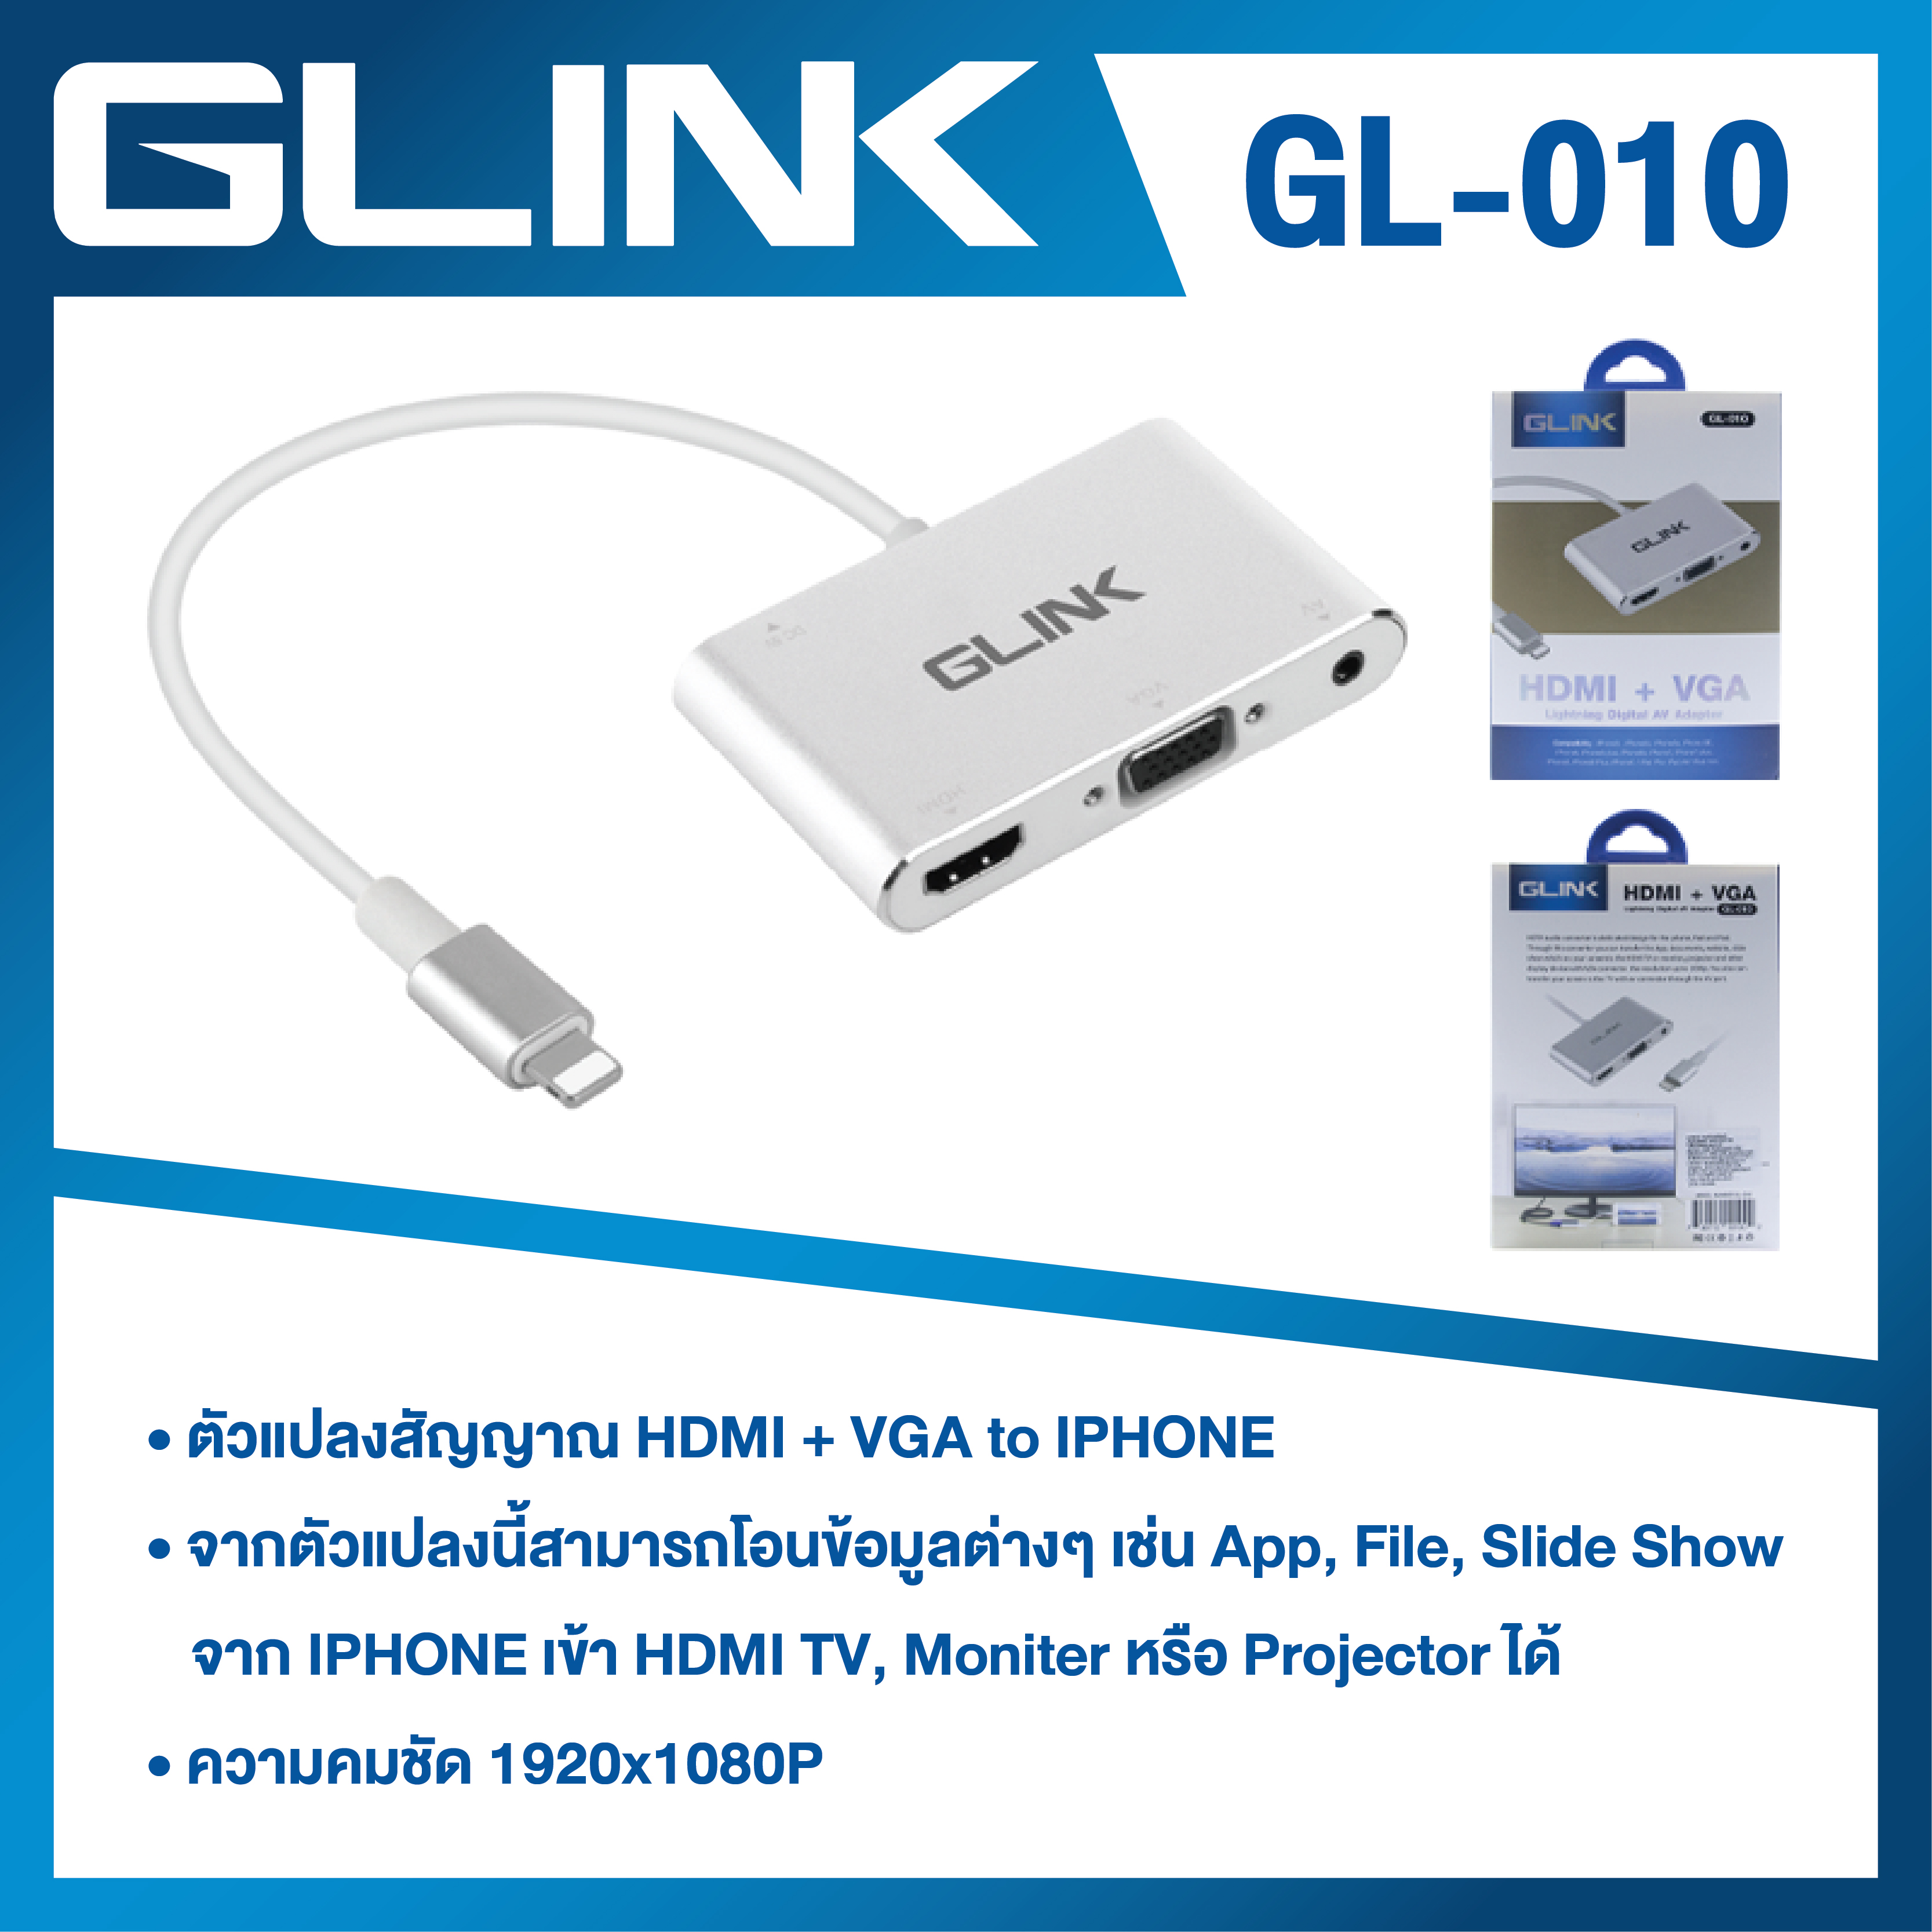 Adaptador USB a HDMI Full HD Glink GL-012